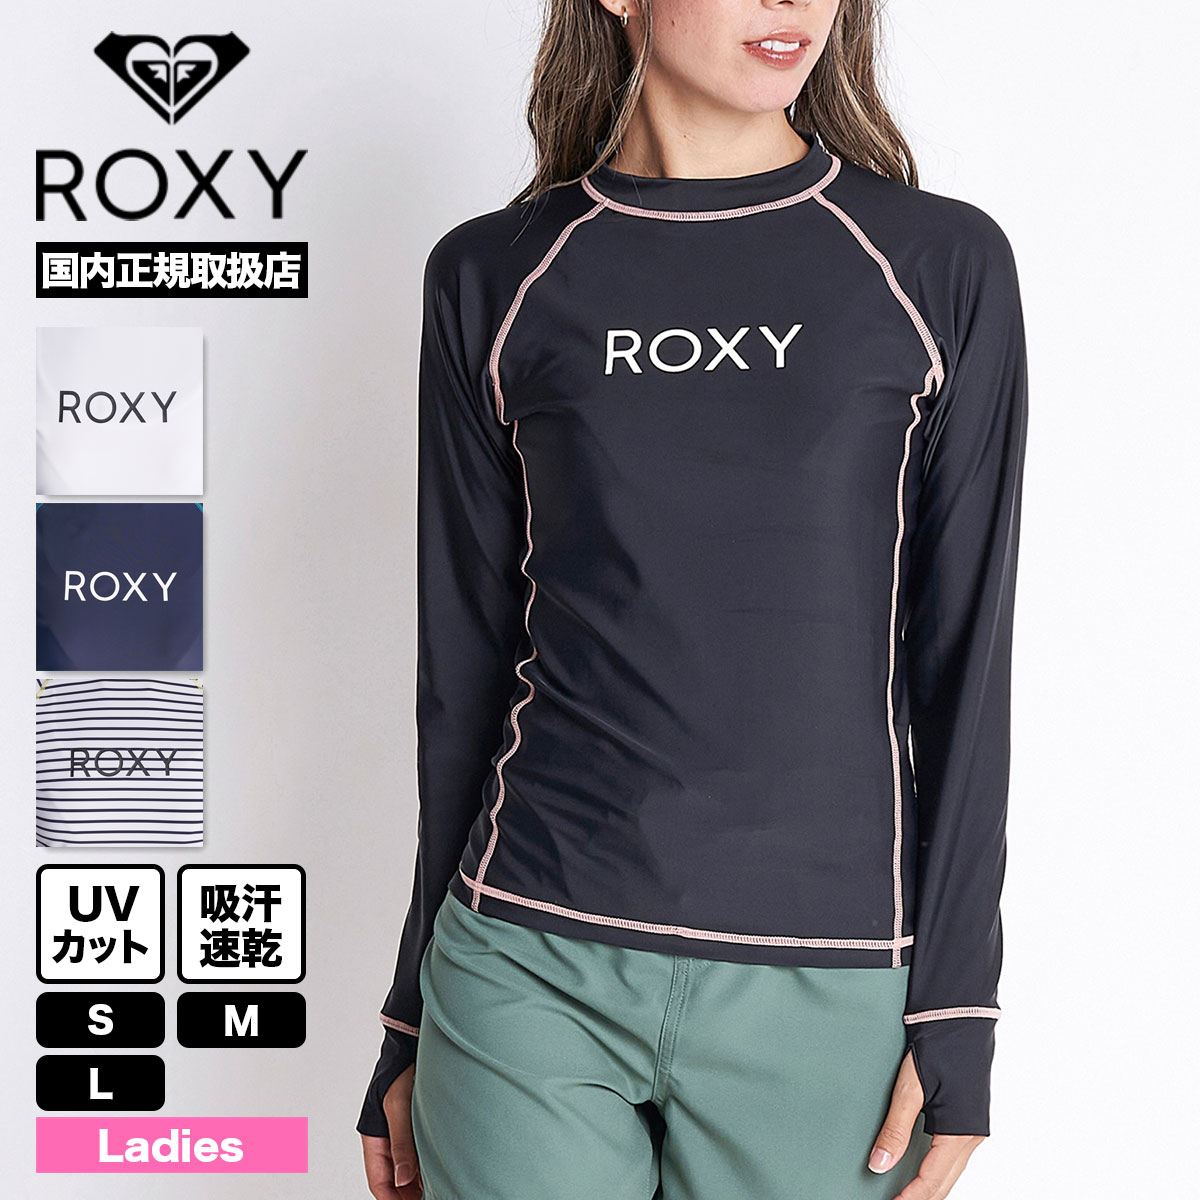 お値打ち価格で 激安‼️ ROXY 長袖 フード付き ラッシュガード 値下げ